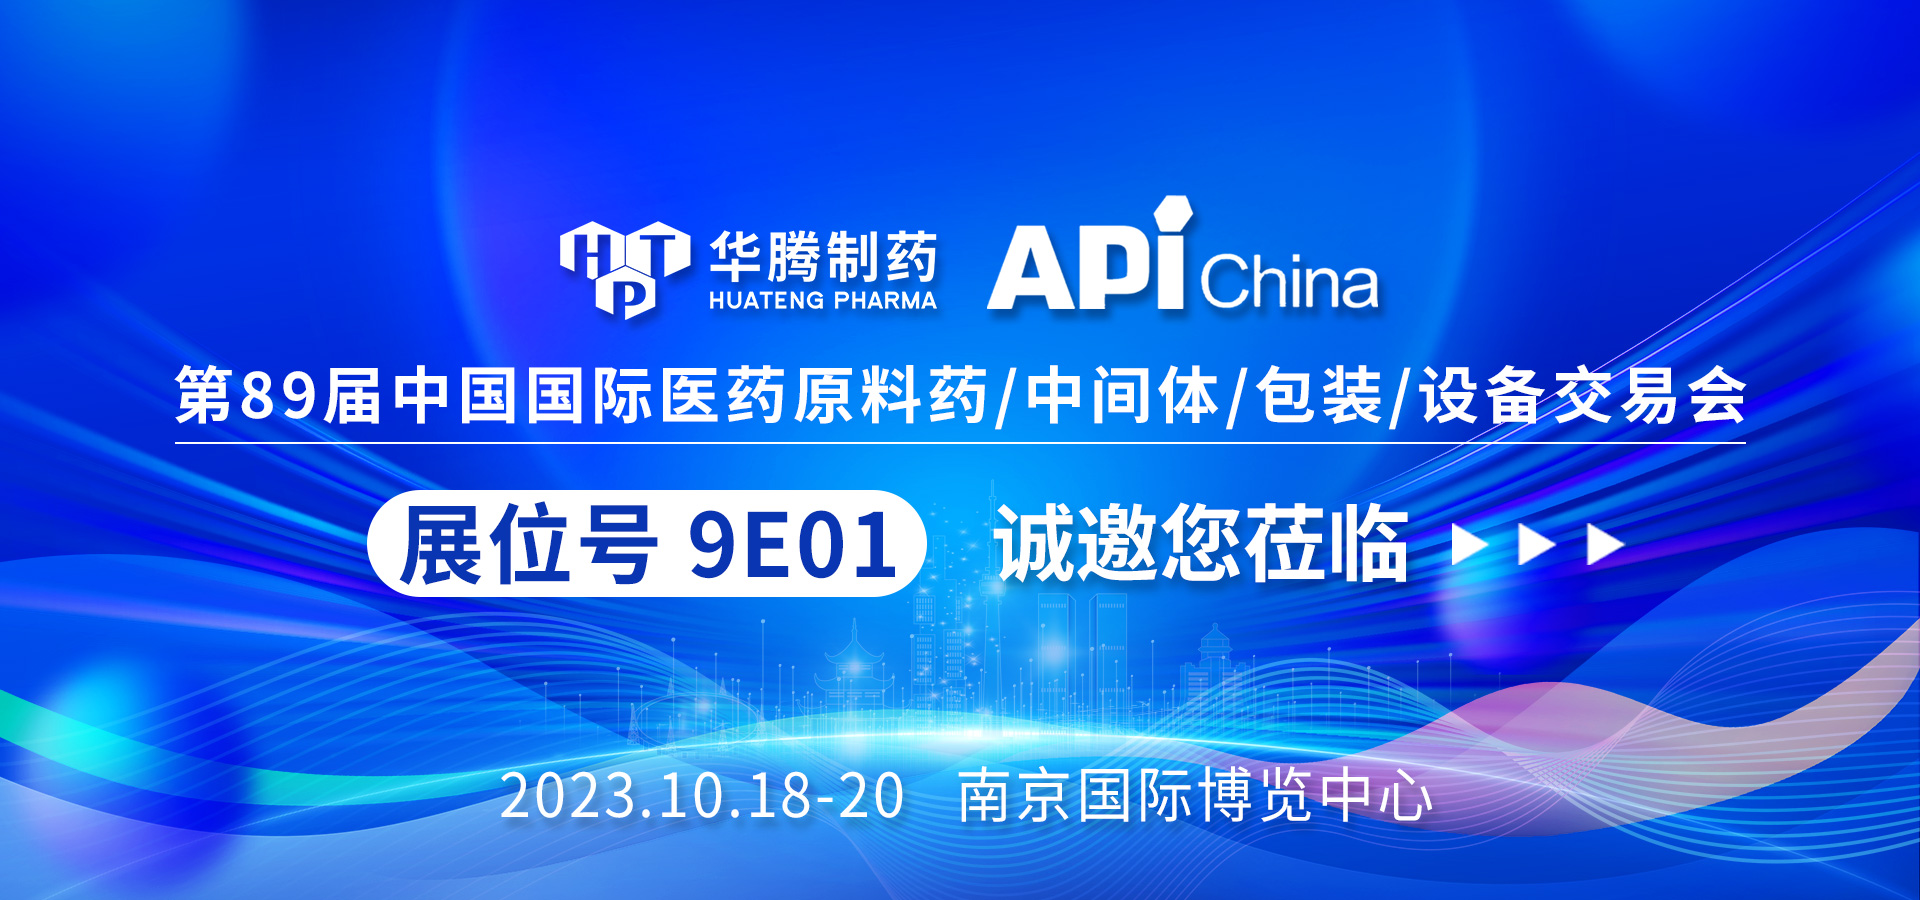 【展会预告】华腾制药邀您共赴南京API China展会